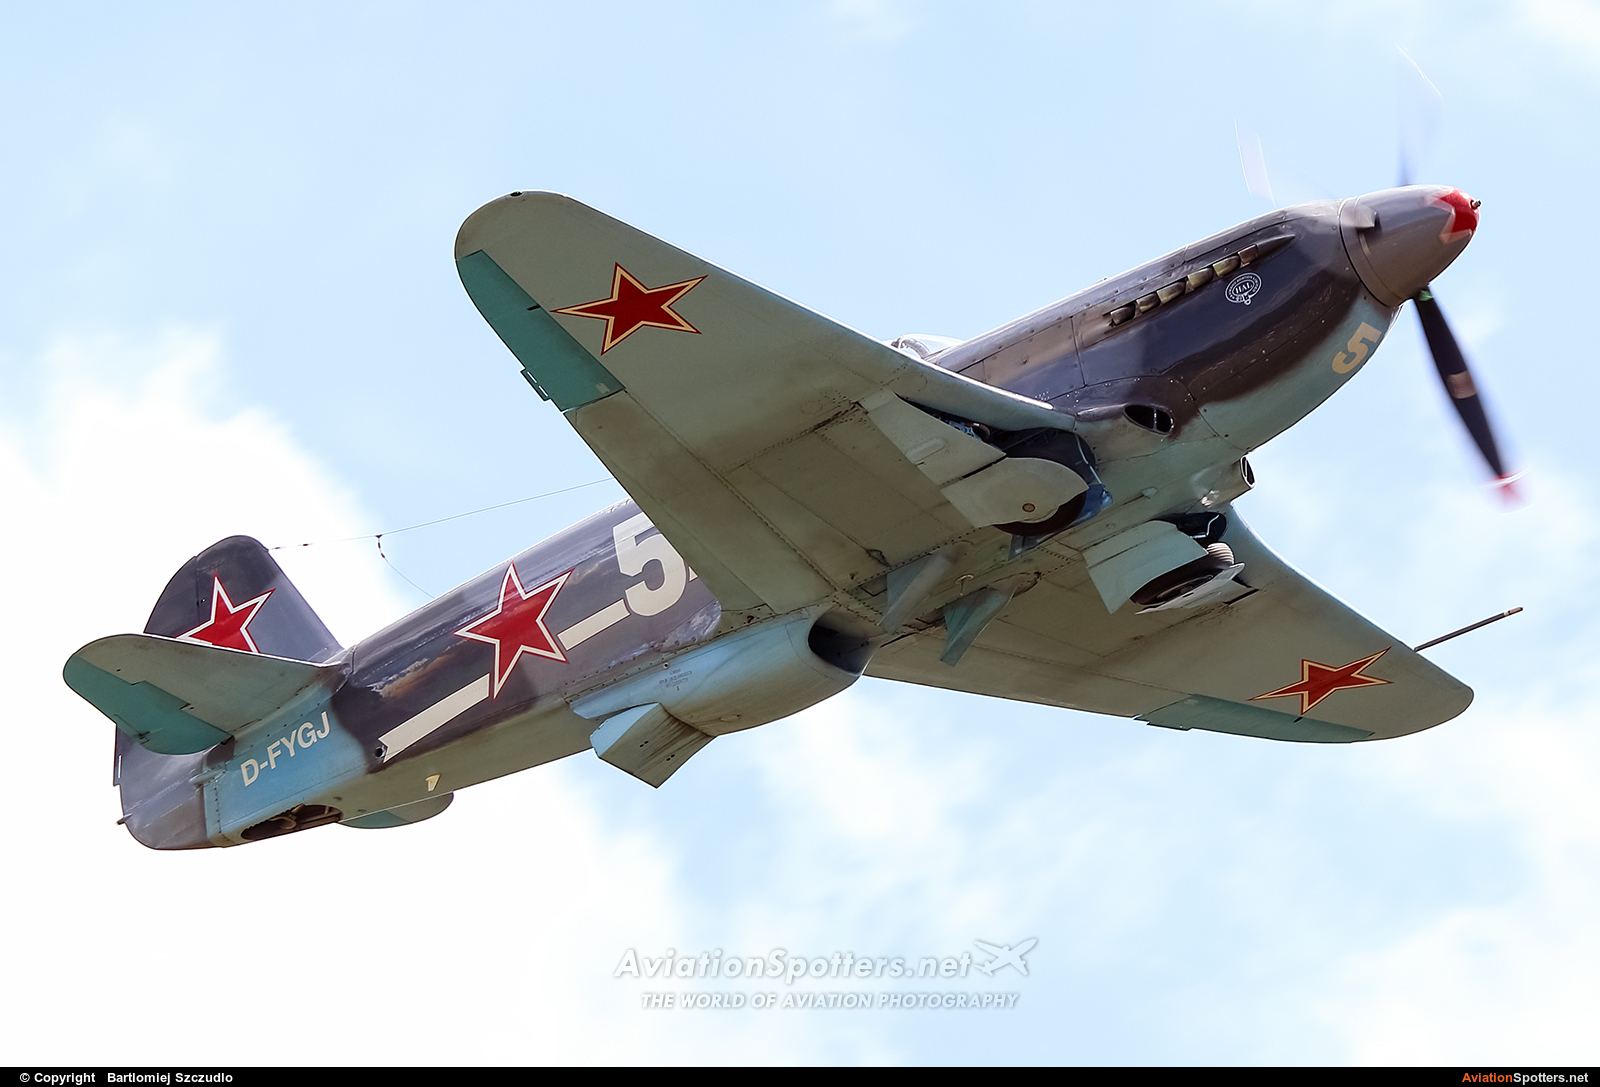 Private  -  Yak-3M  (D-FYGJ) By Bartlomiej Szczudlo  (BartekSzczudlo)